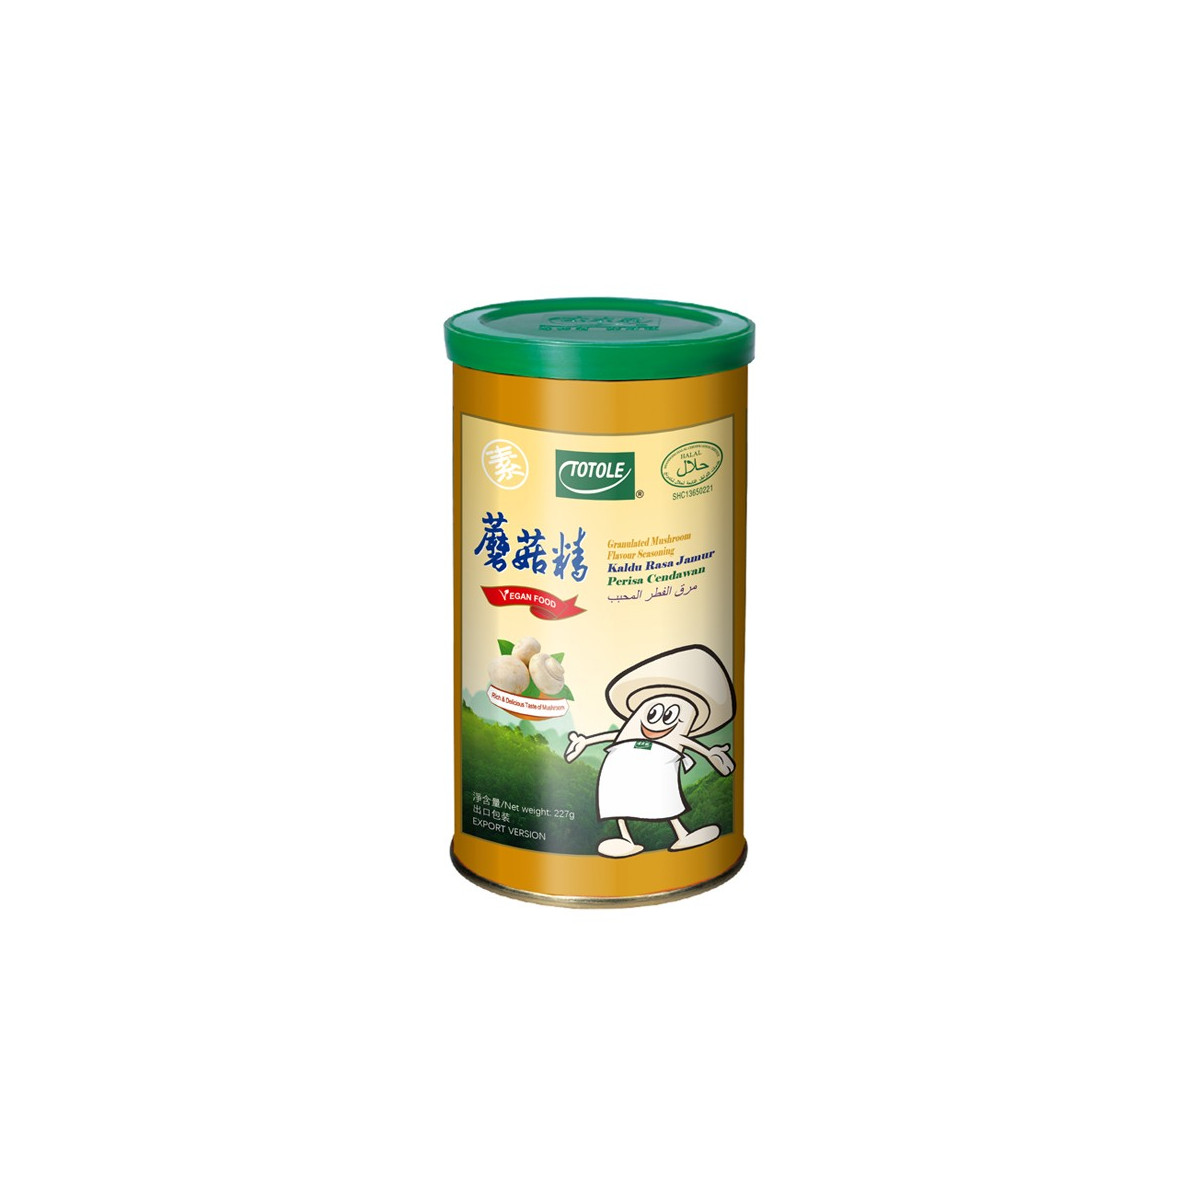 Condiment granulat cu aroma de ciuperci 227g -Totole